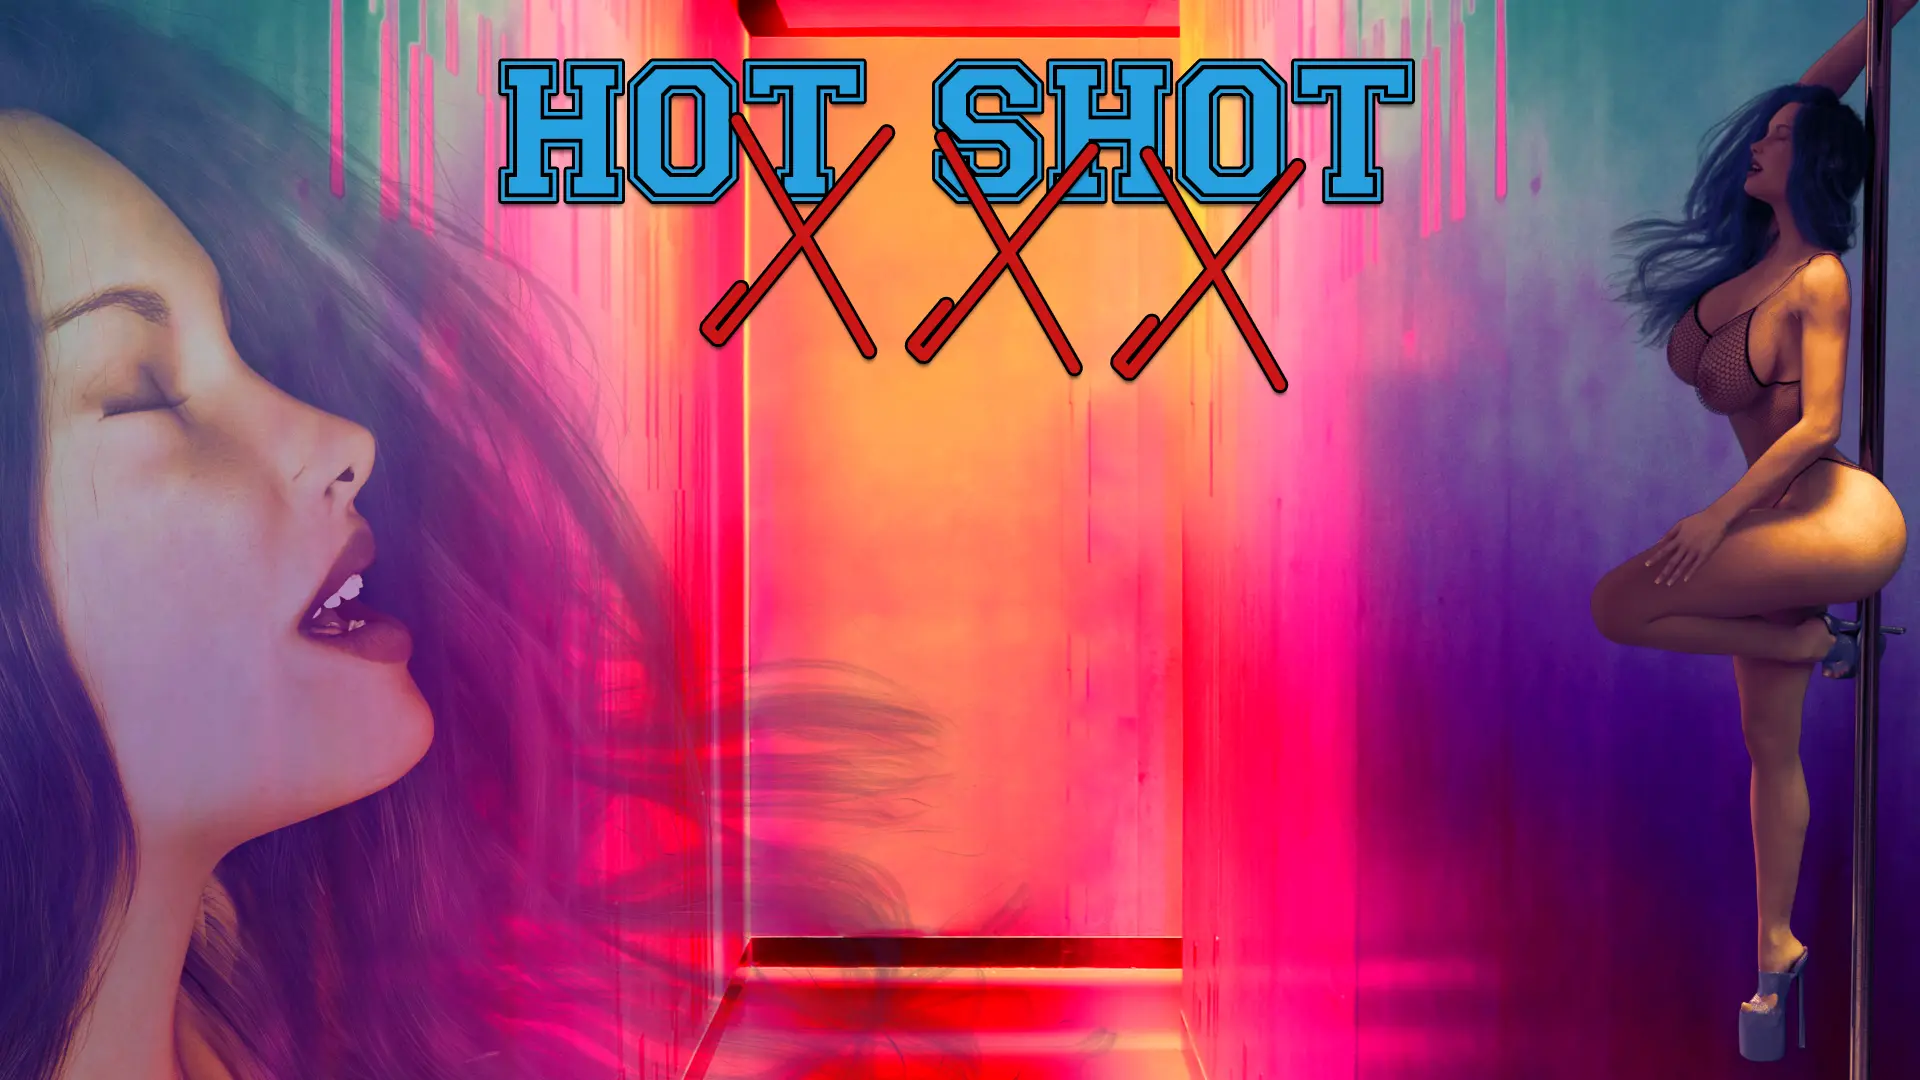 Hot Shot XXX [v4.0 Alpha] main image